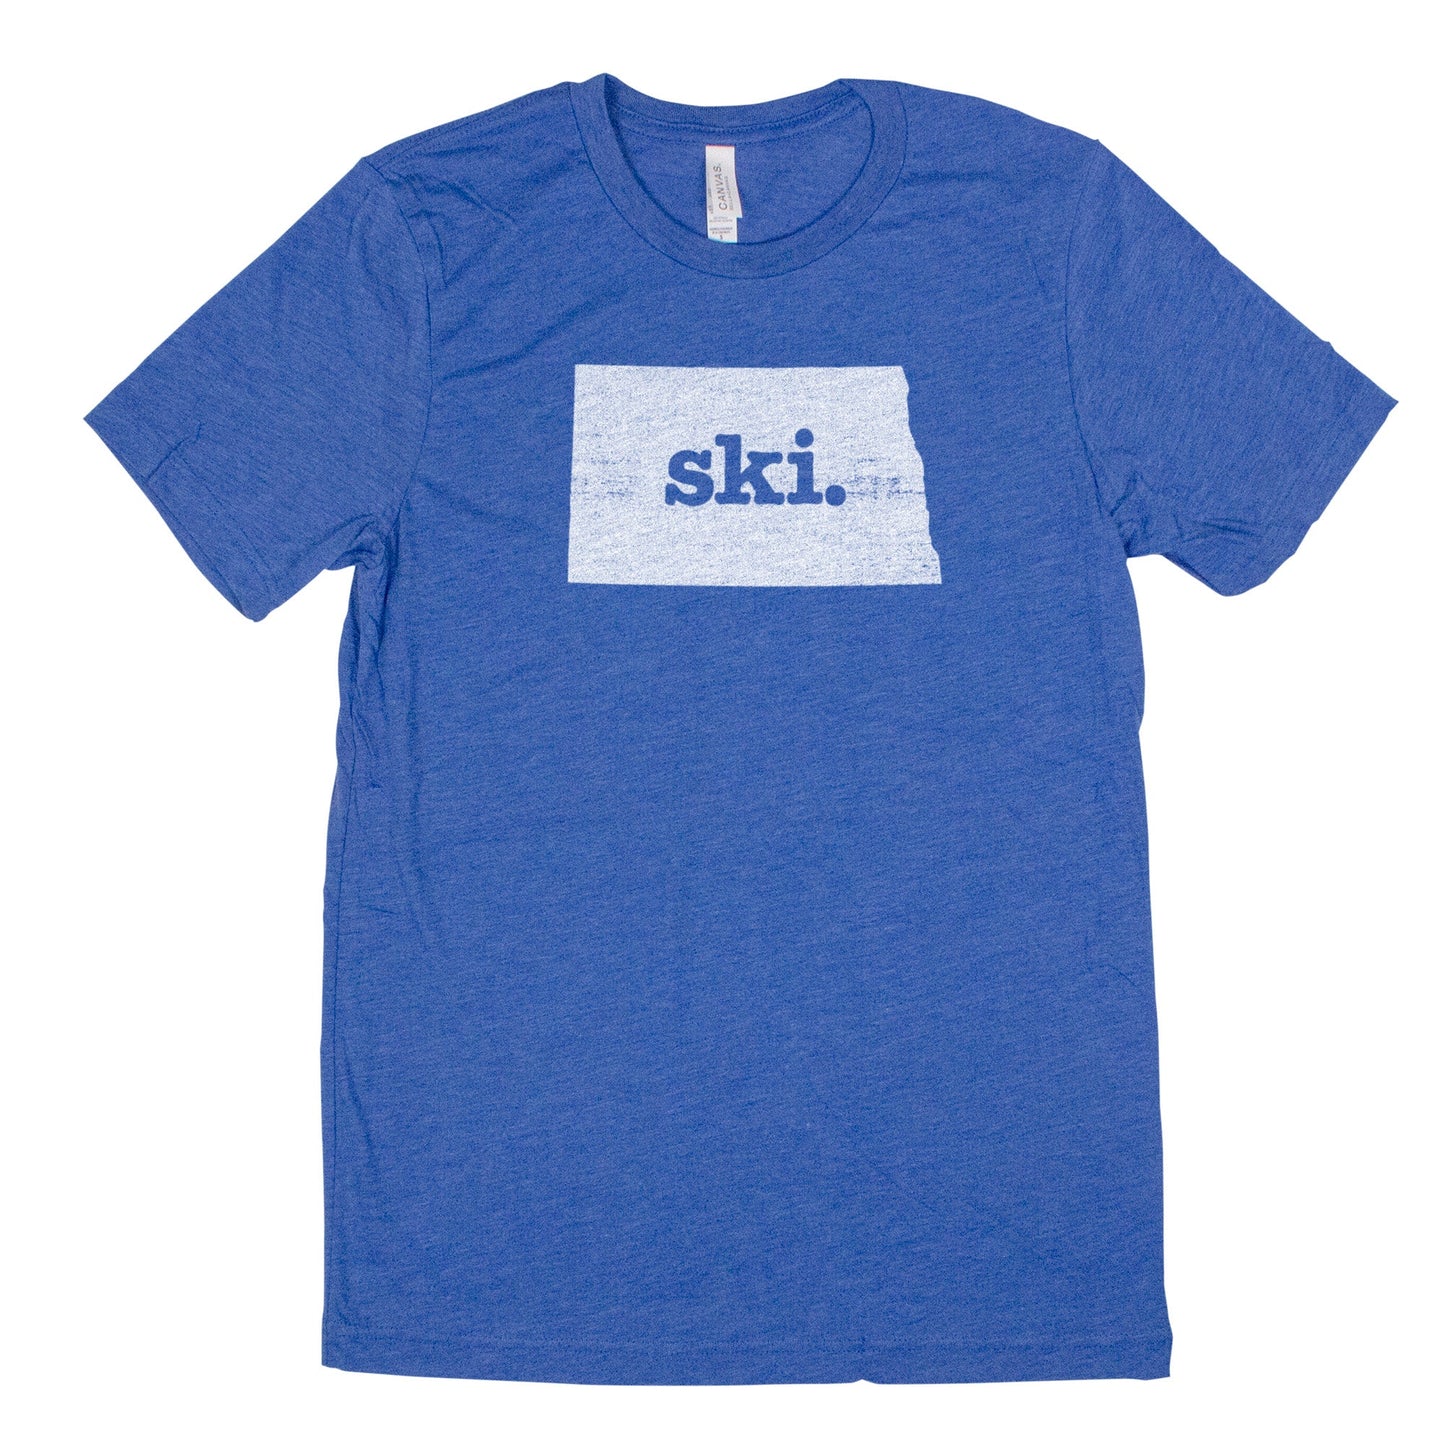 ski. Men's Unisex T-Shirt - North Dakota